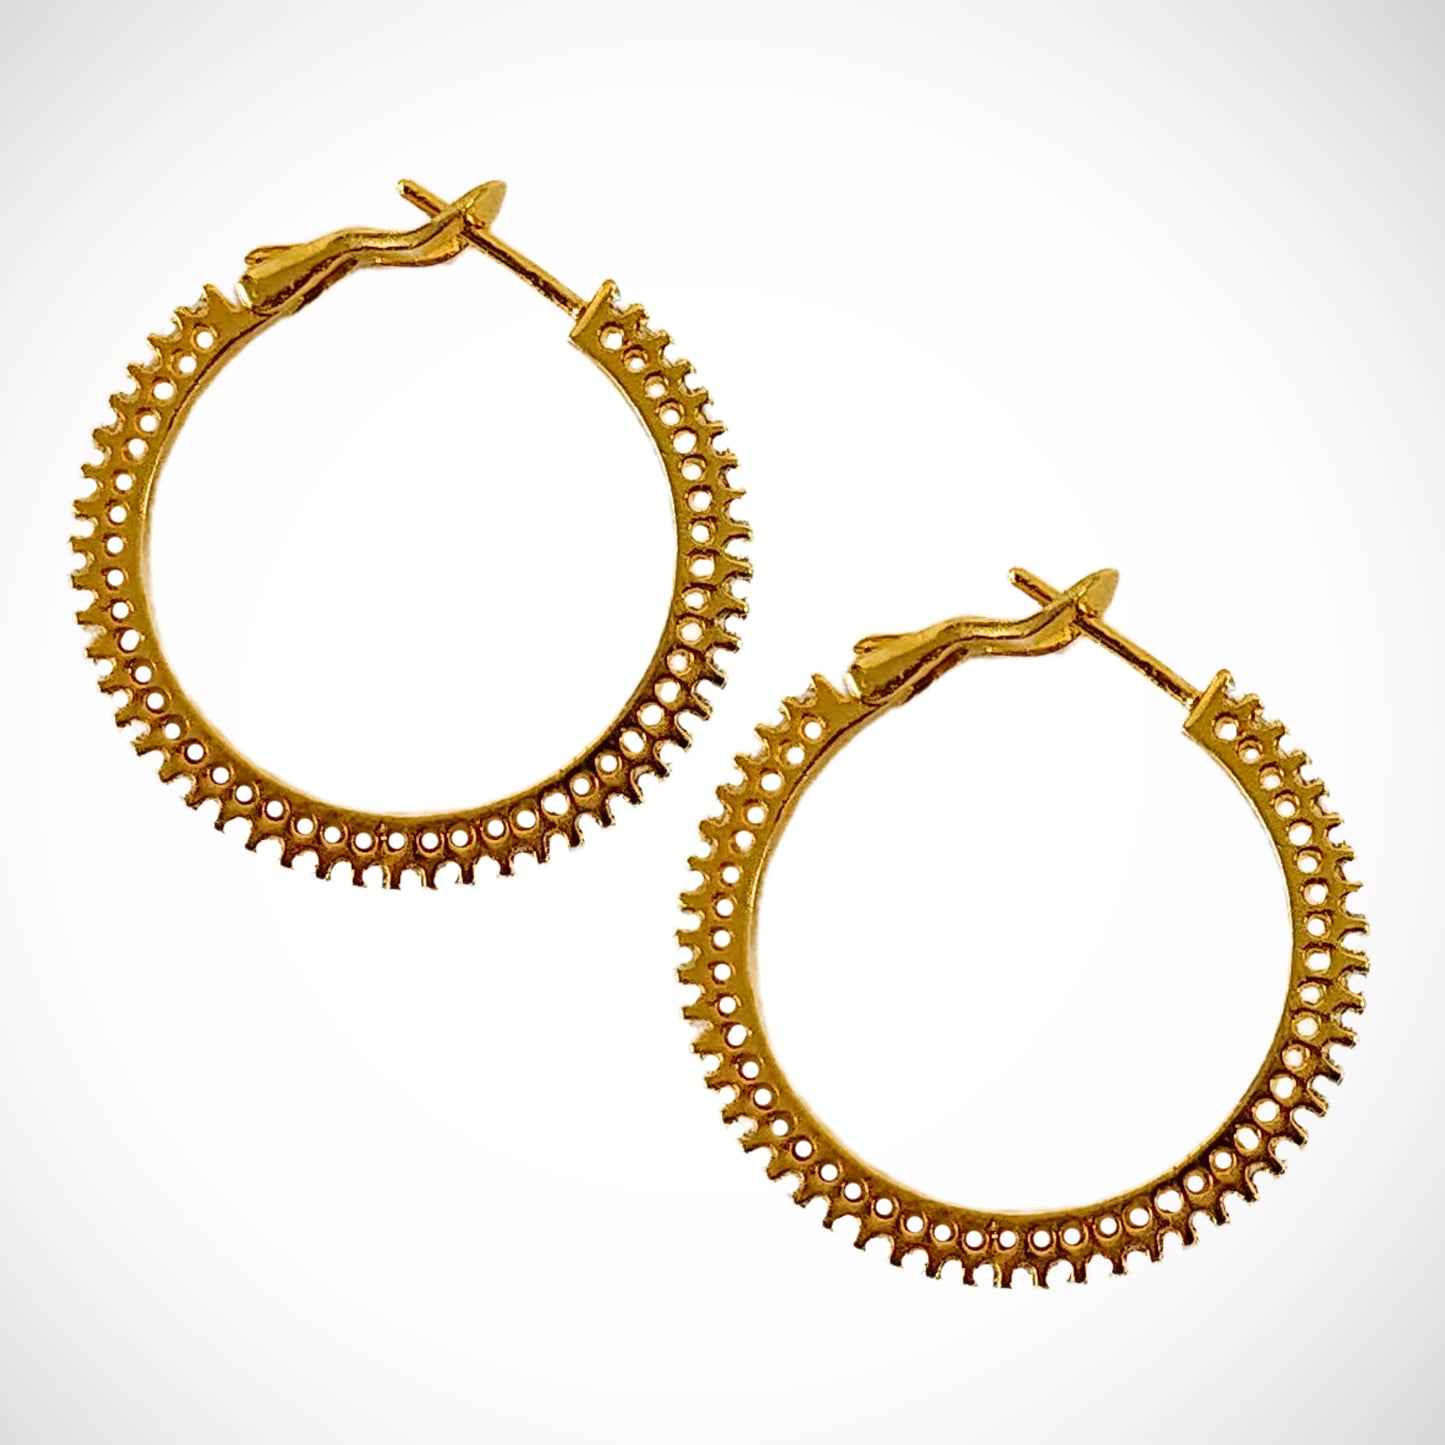 Bdiva 18k Gold Plated Zircon Hoops Earrings